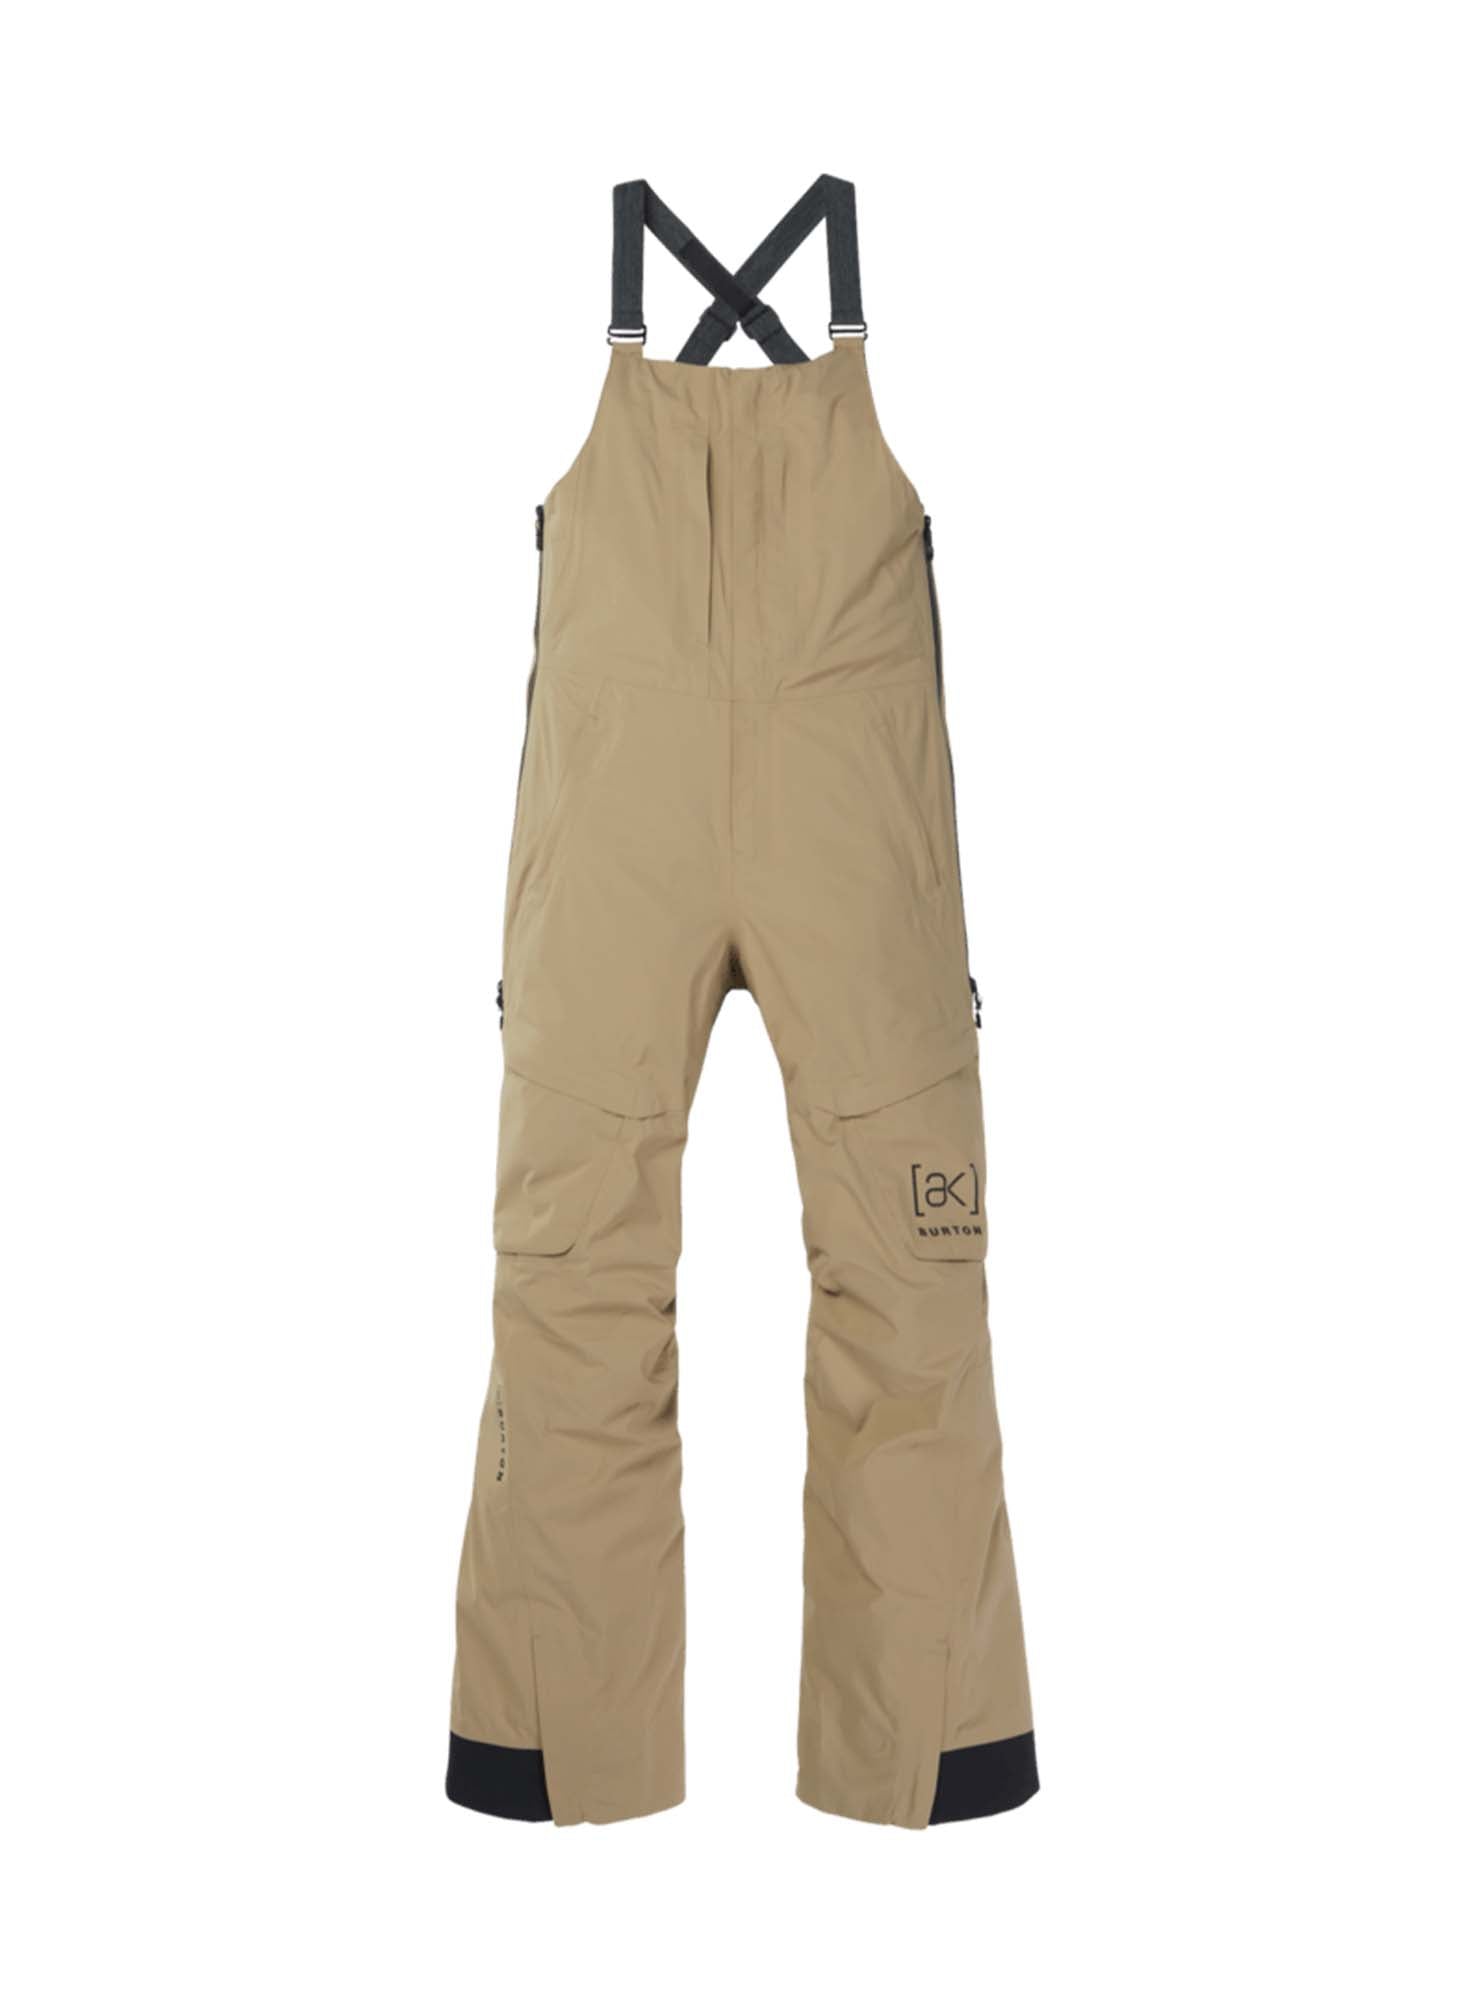 Spodnie na szelkach [ak] Kimmy GORE-TEX 2L Bib Pants